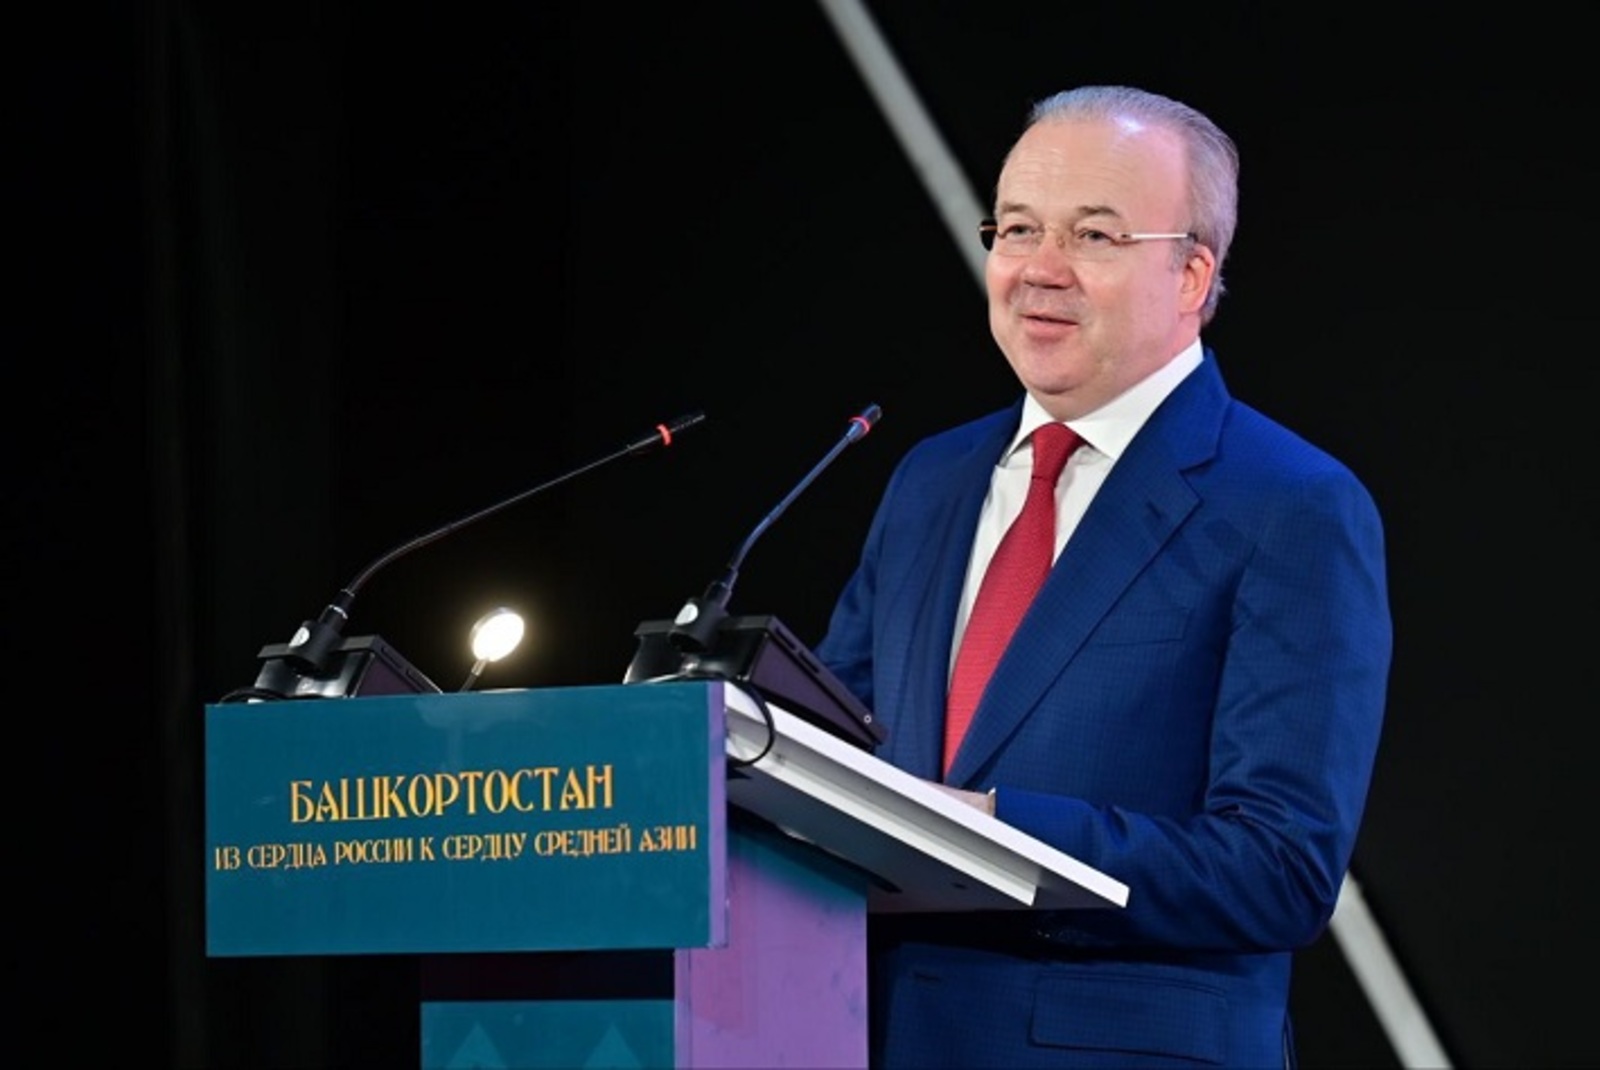 Андрей Назаров представил потенциал Башкортостана в Ташкенте